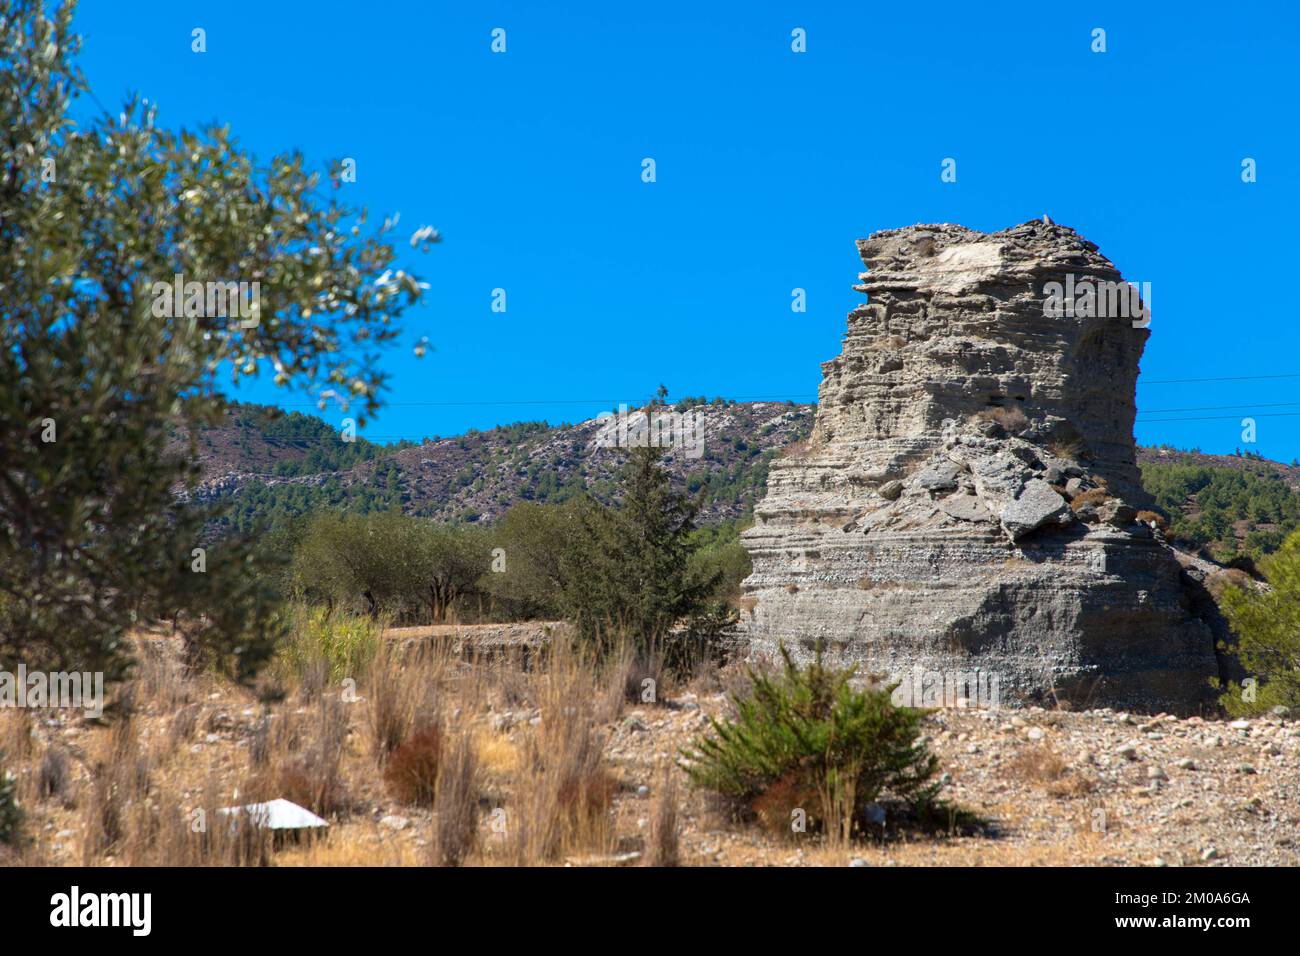 Olivenbaum und großer Stein in einer typisch griechischen Landschaft. Trockenes Klima und sonniger blauer Himmel. Rhodos-Insel, Griechenland. Stockfoto